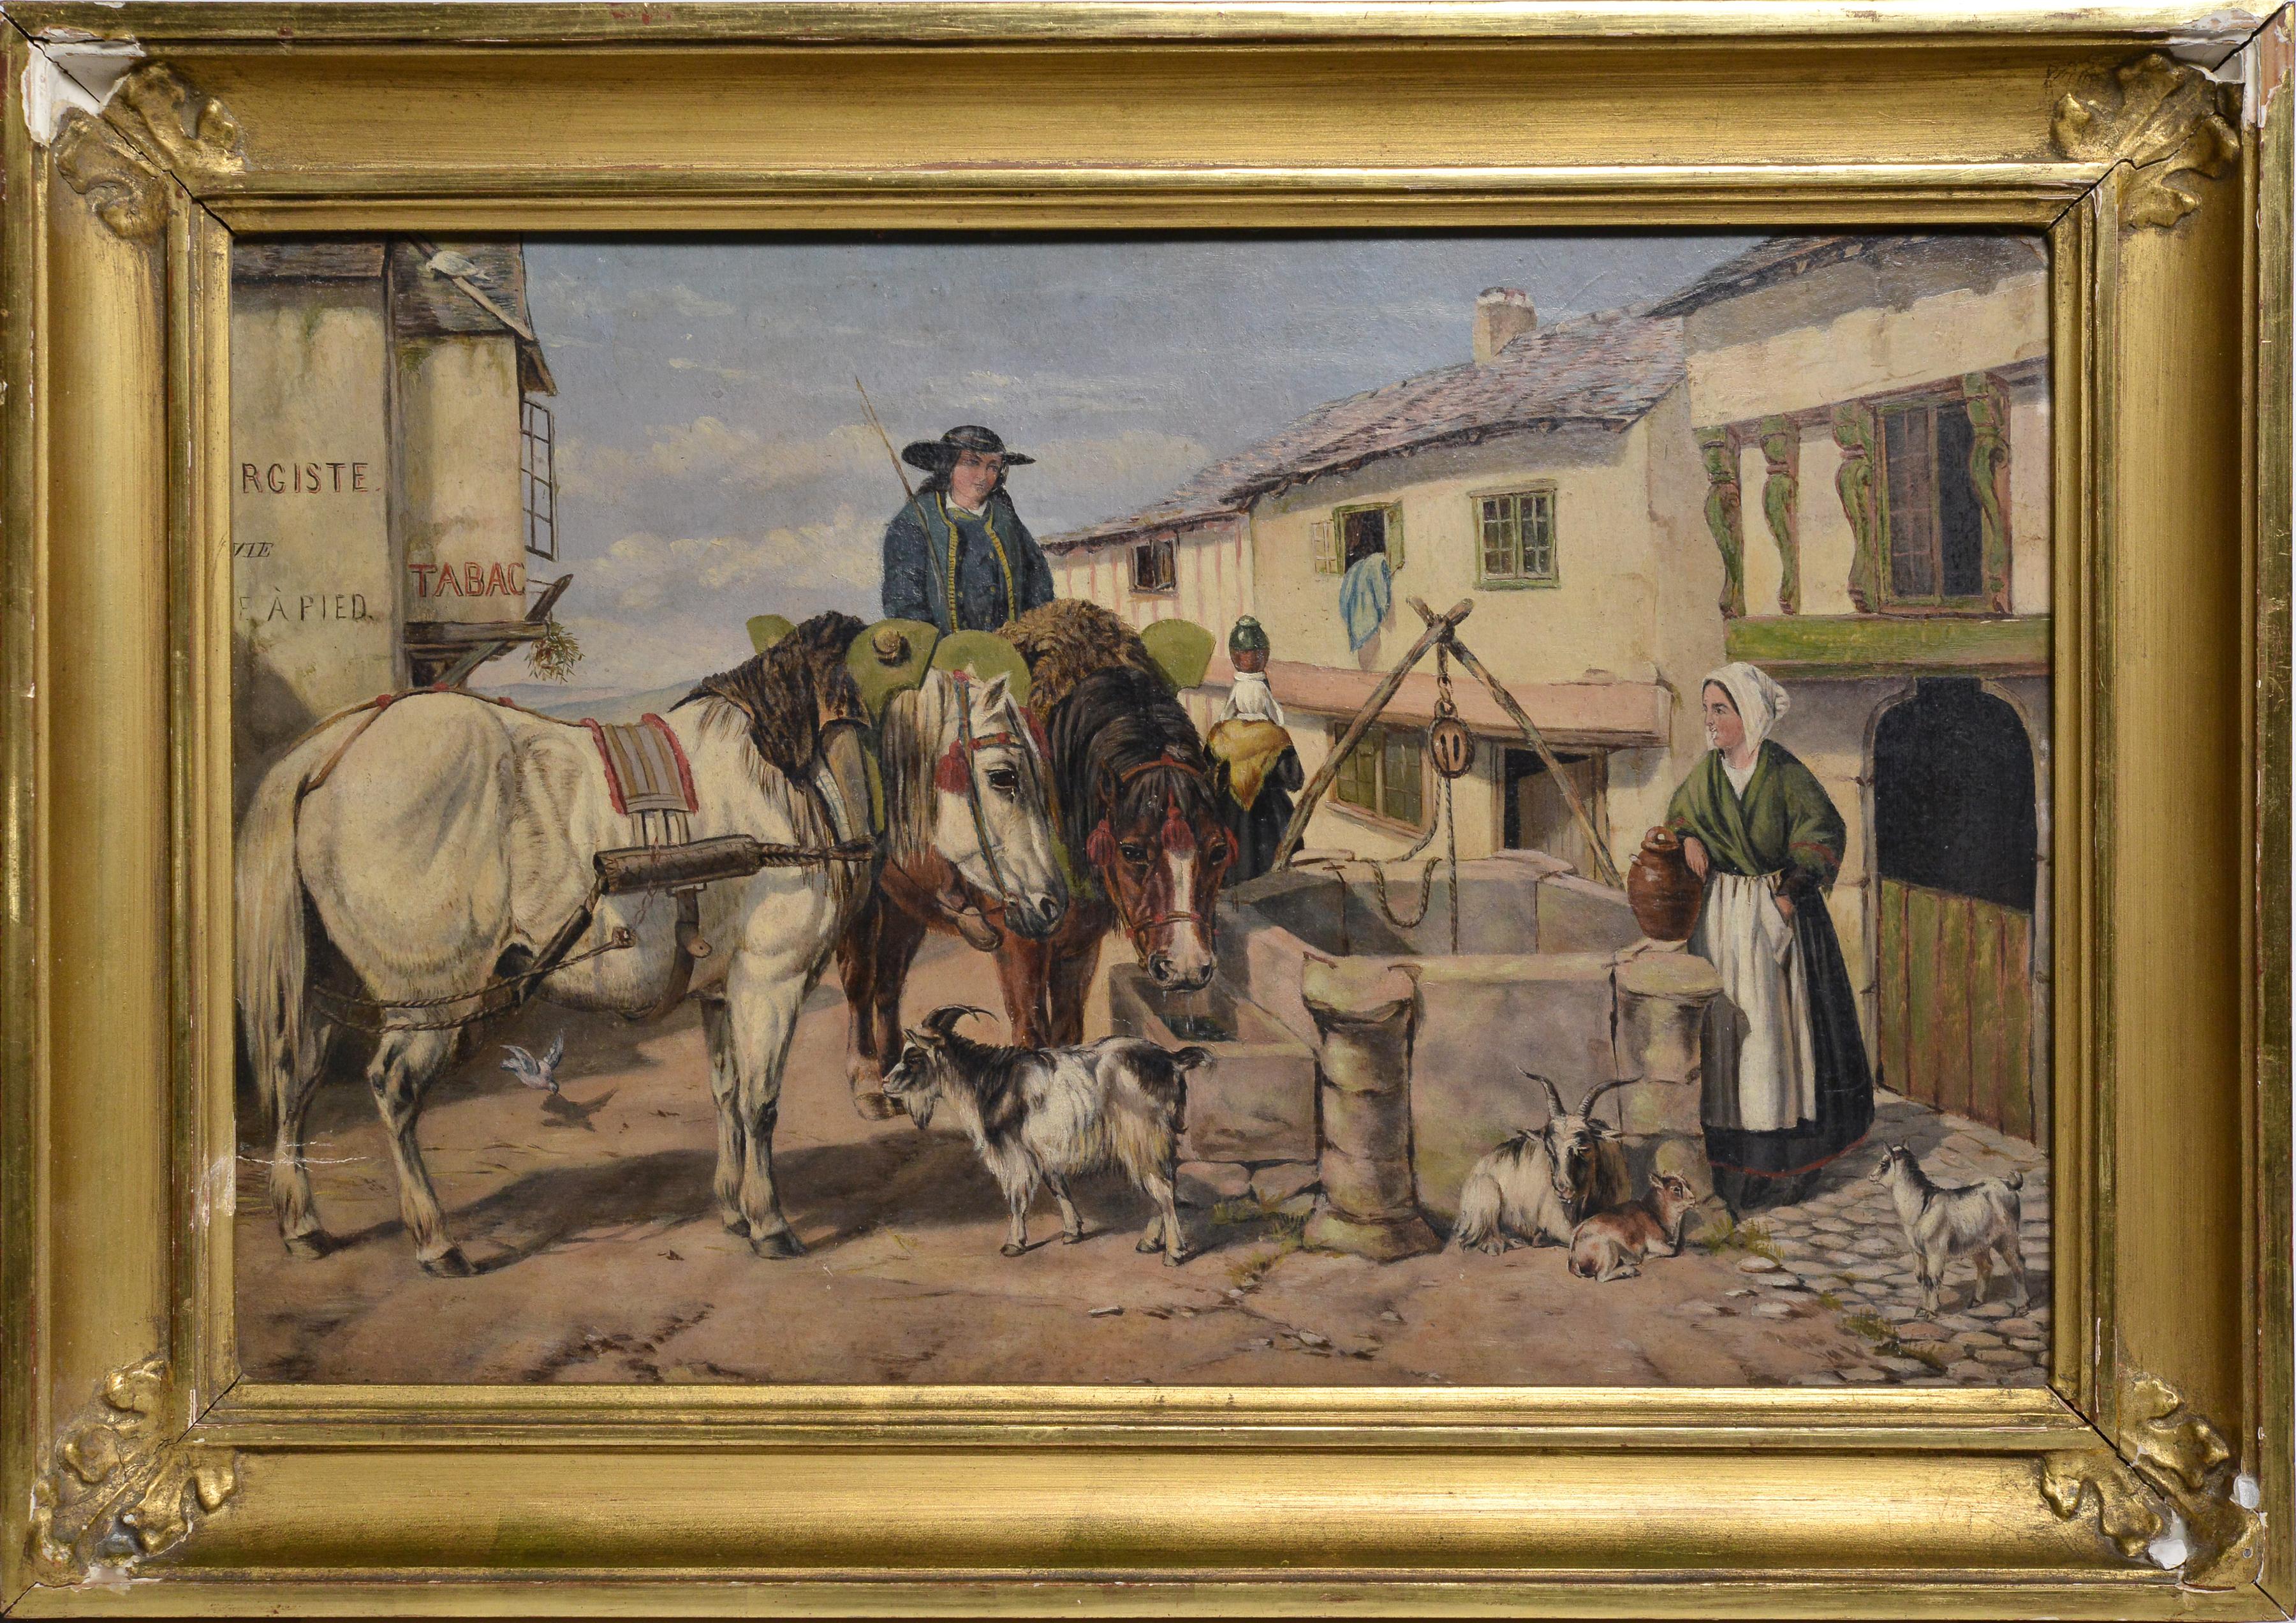 Animal Painting Unknown - Peinture à l'huile du 19e siècle représentant un trou d'eau de jour dans un village français